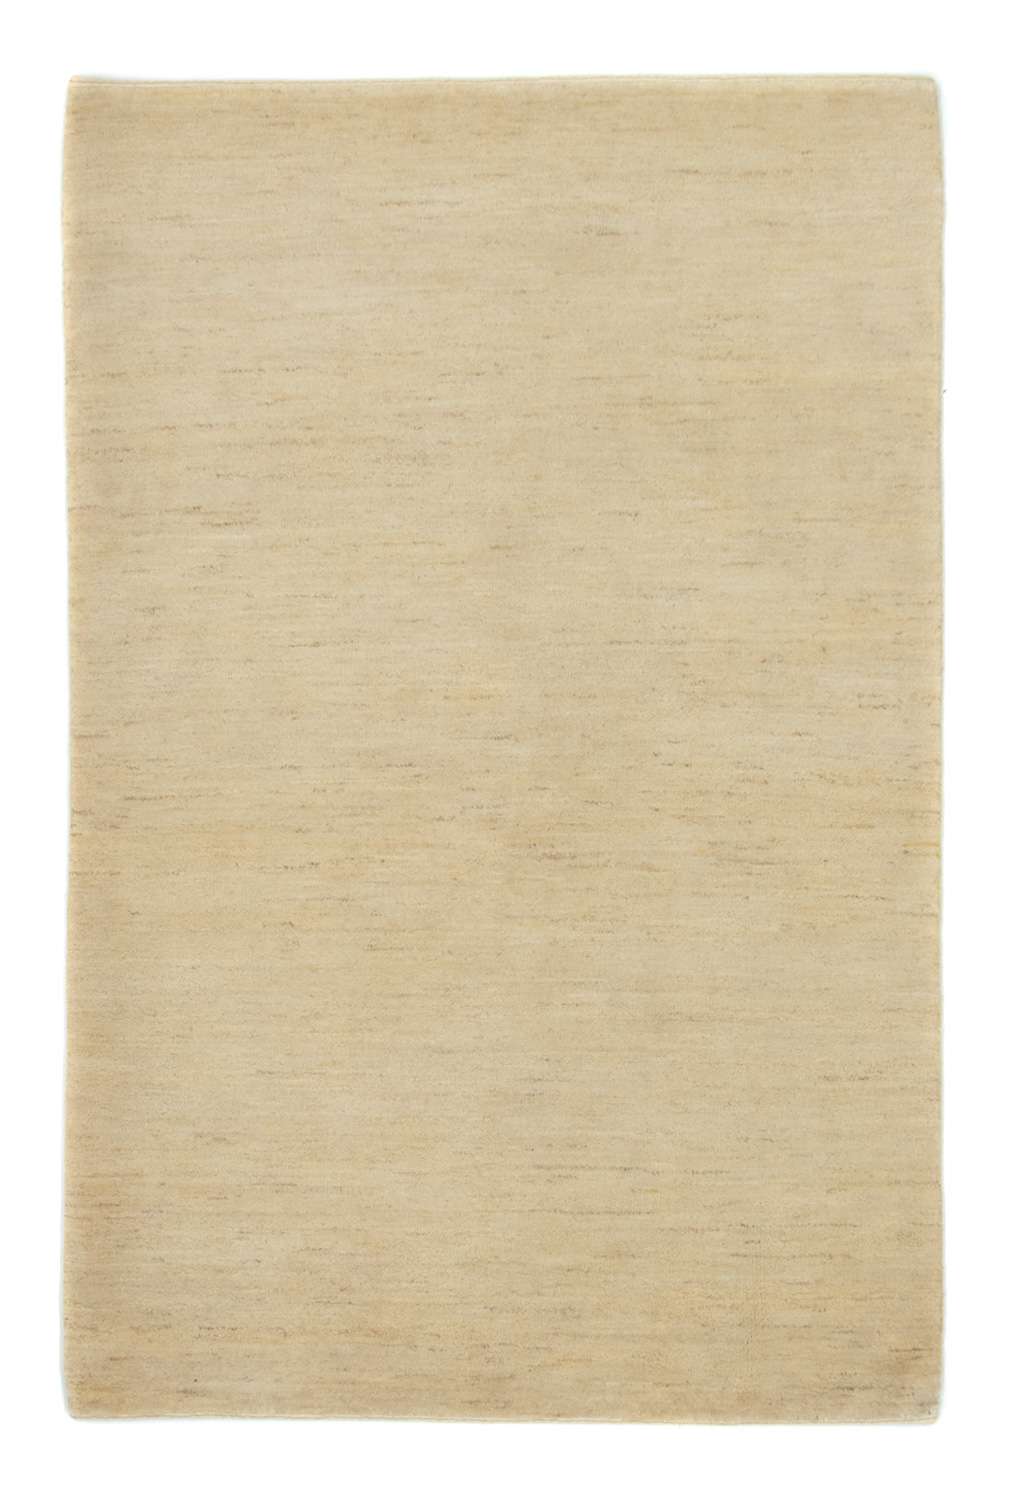 Tappeto Gabbeh - Indus - 184 x 119 cm - beige